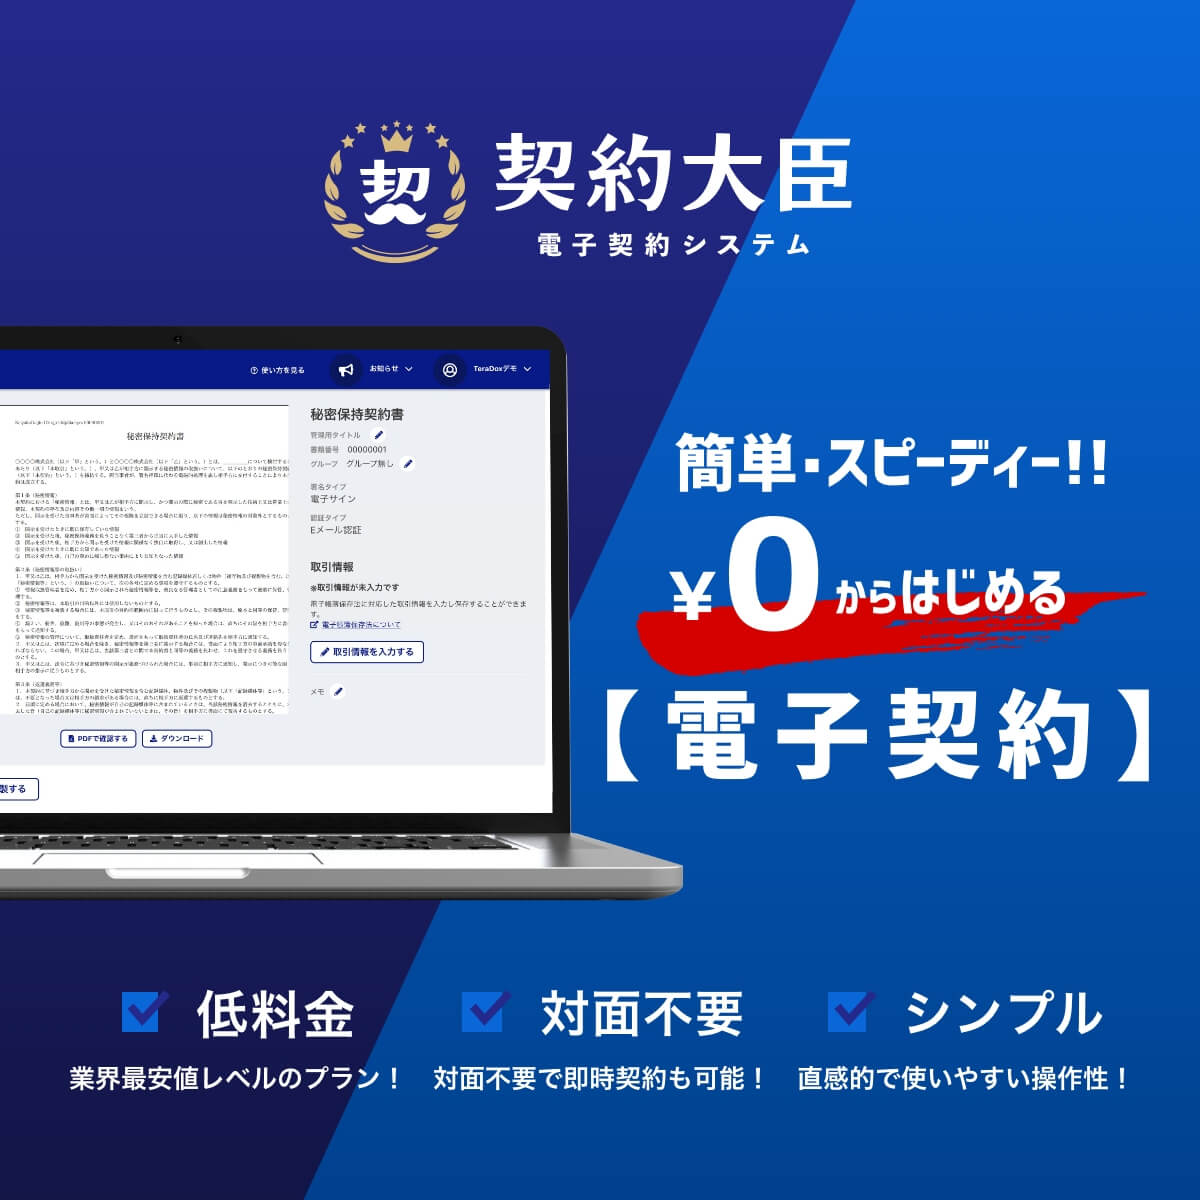 シンプル・スピーディーな電子契約システム【契約大臣】